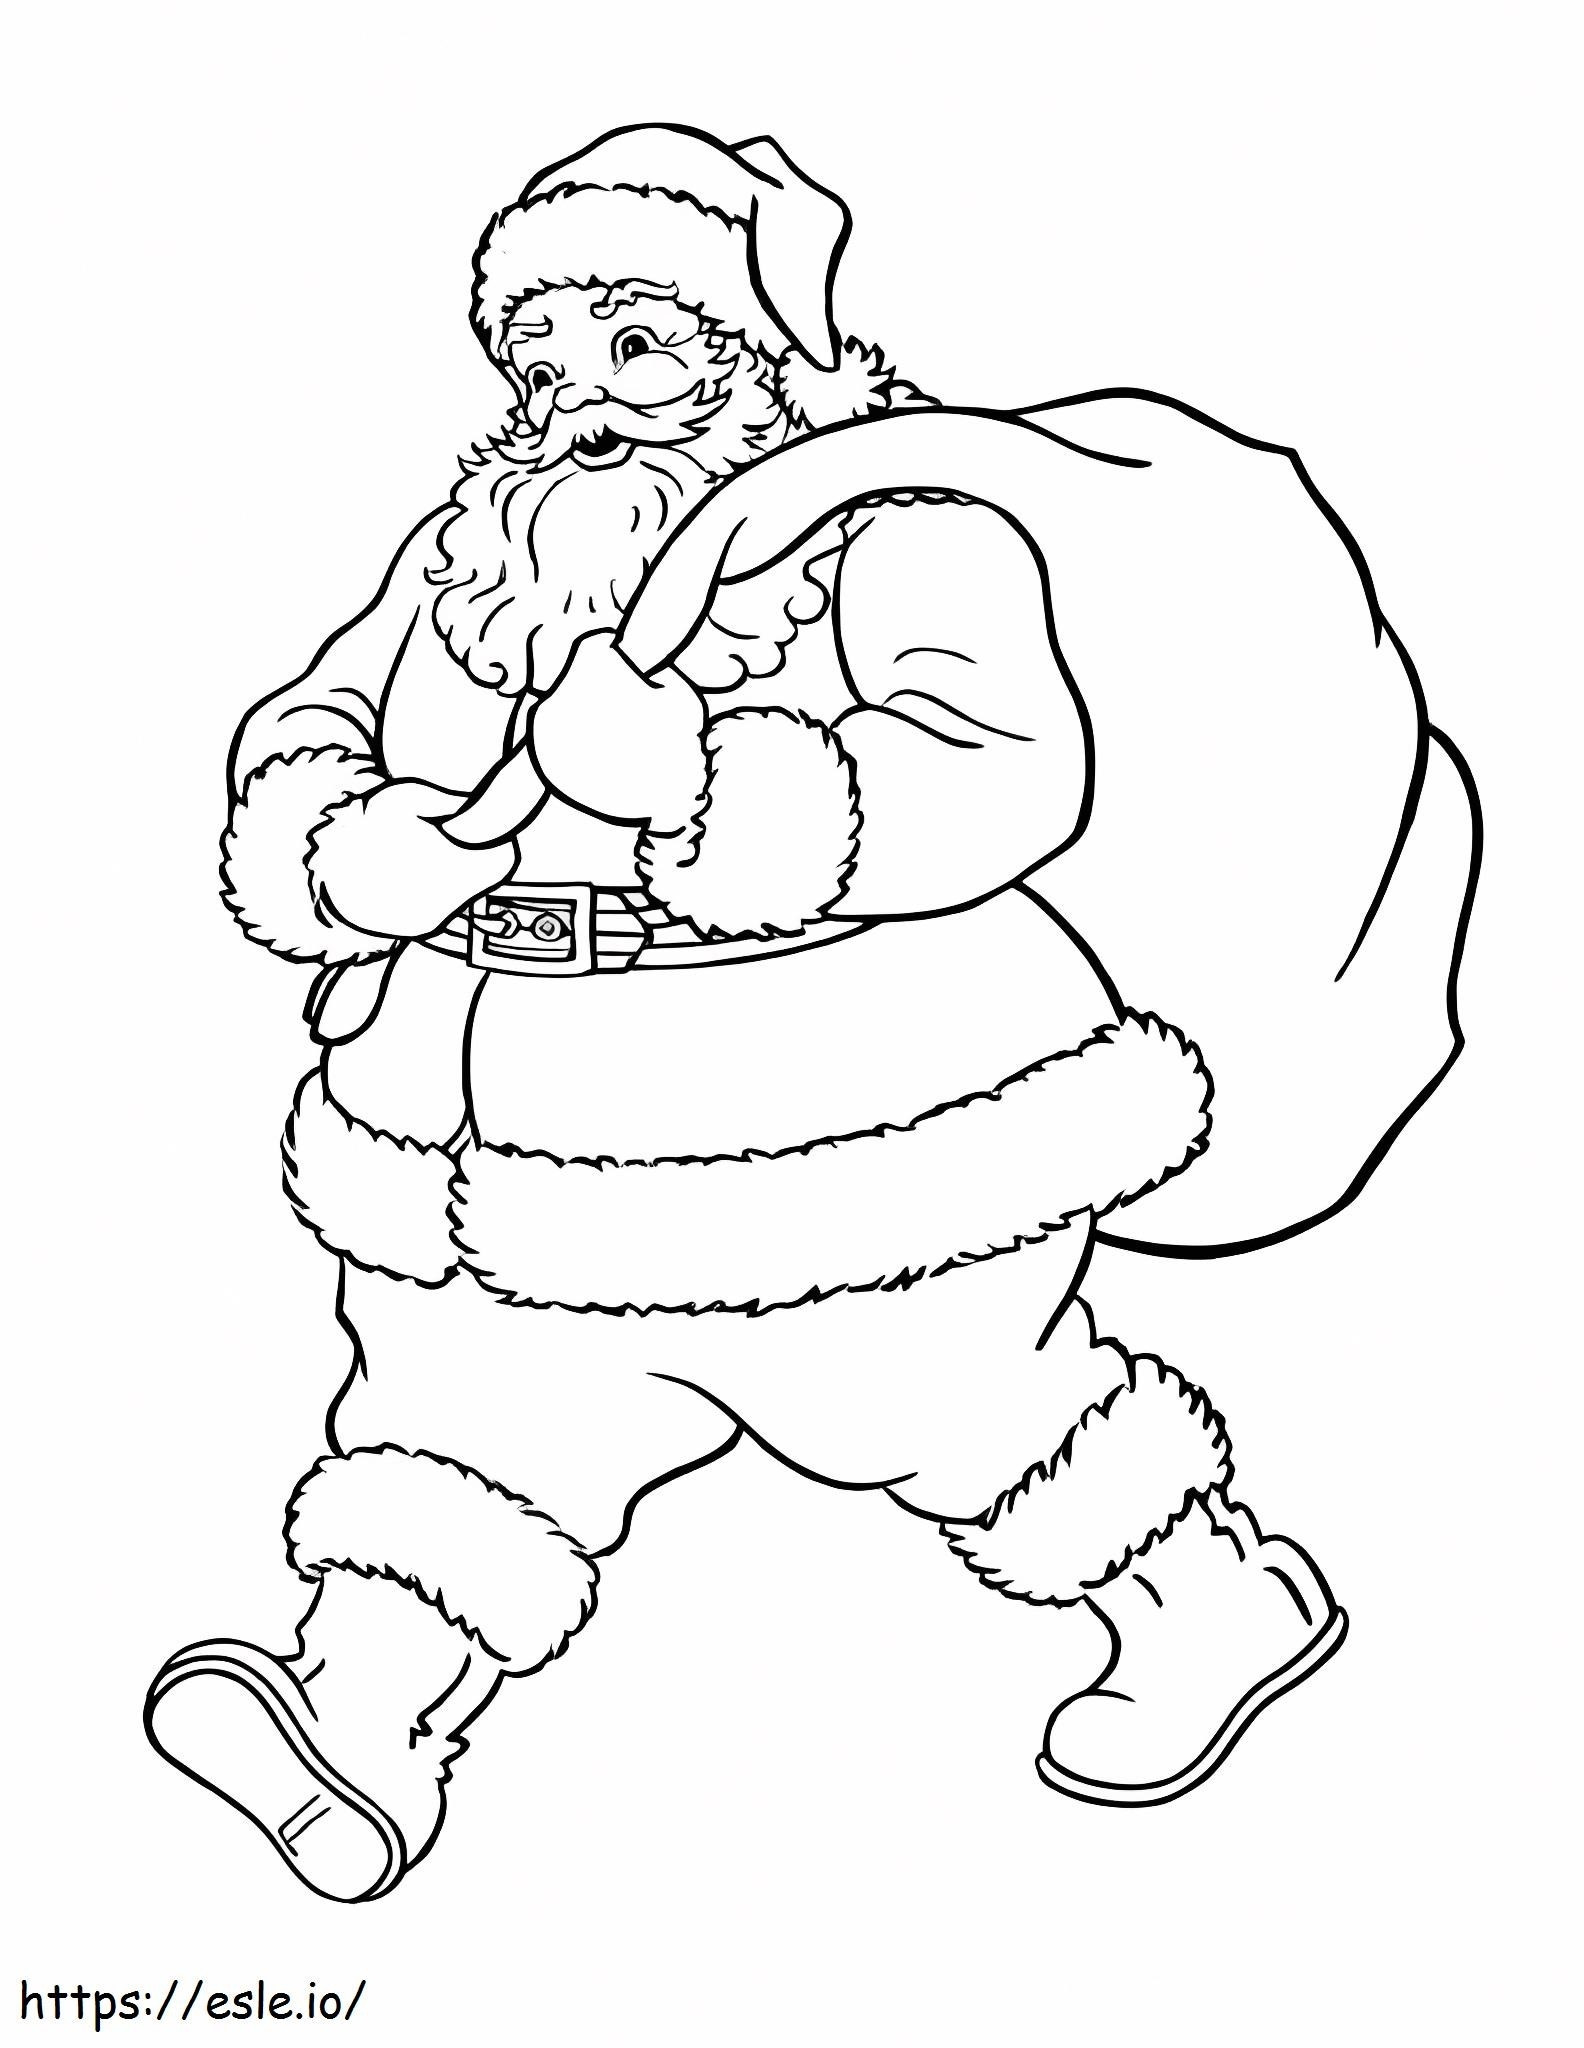 Der Weihnachtsmann geht spazieren ausmalbilder